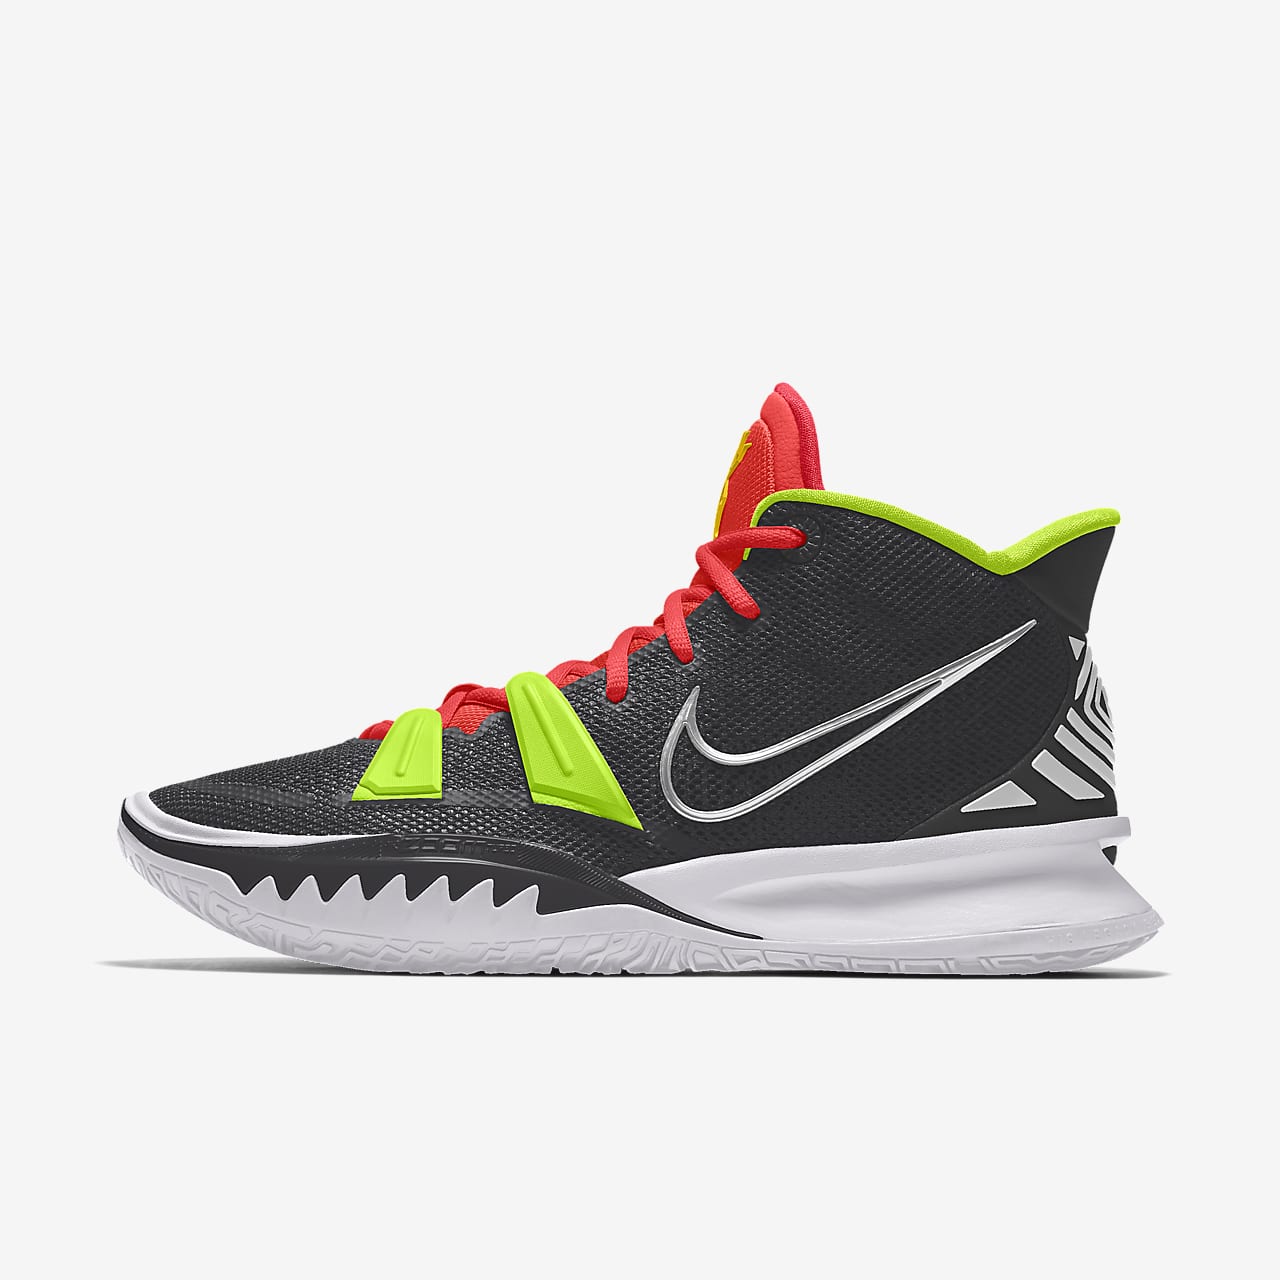 kyrie 5 by you custom basketball shoe